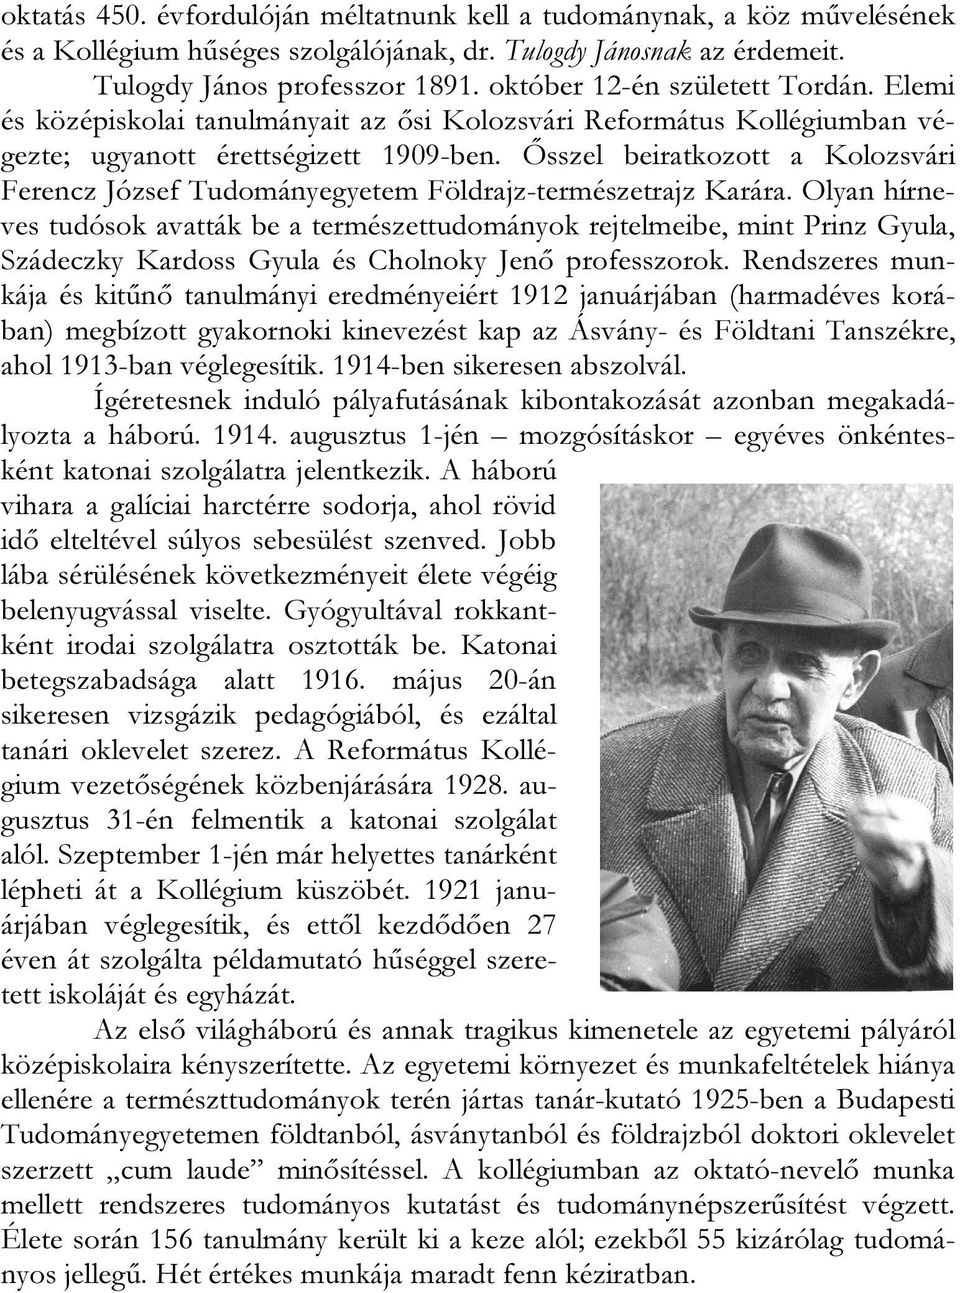 Ősszel beiratkozott a Kolozsvári Ferencz József Tudományegyetem Földrajz-természetrajz Karára.